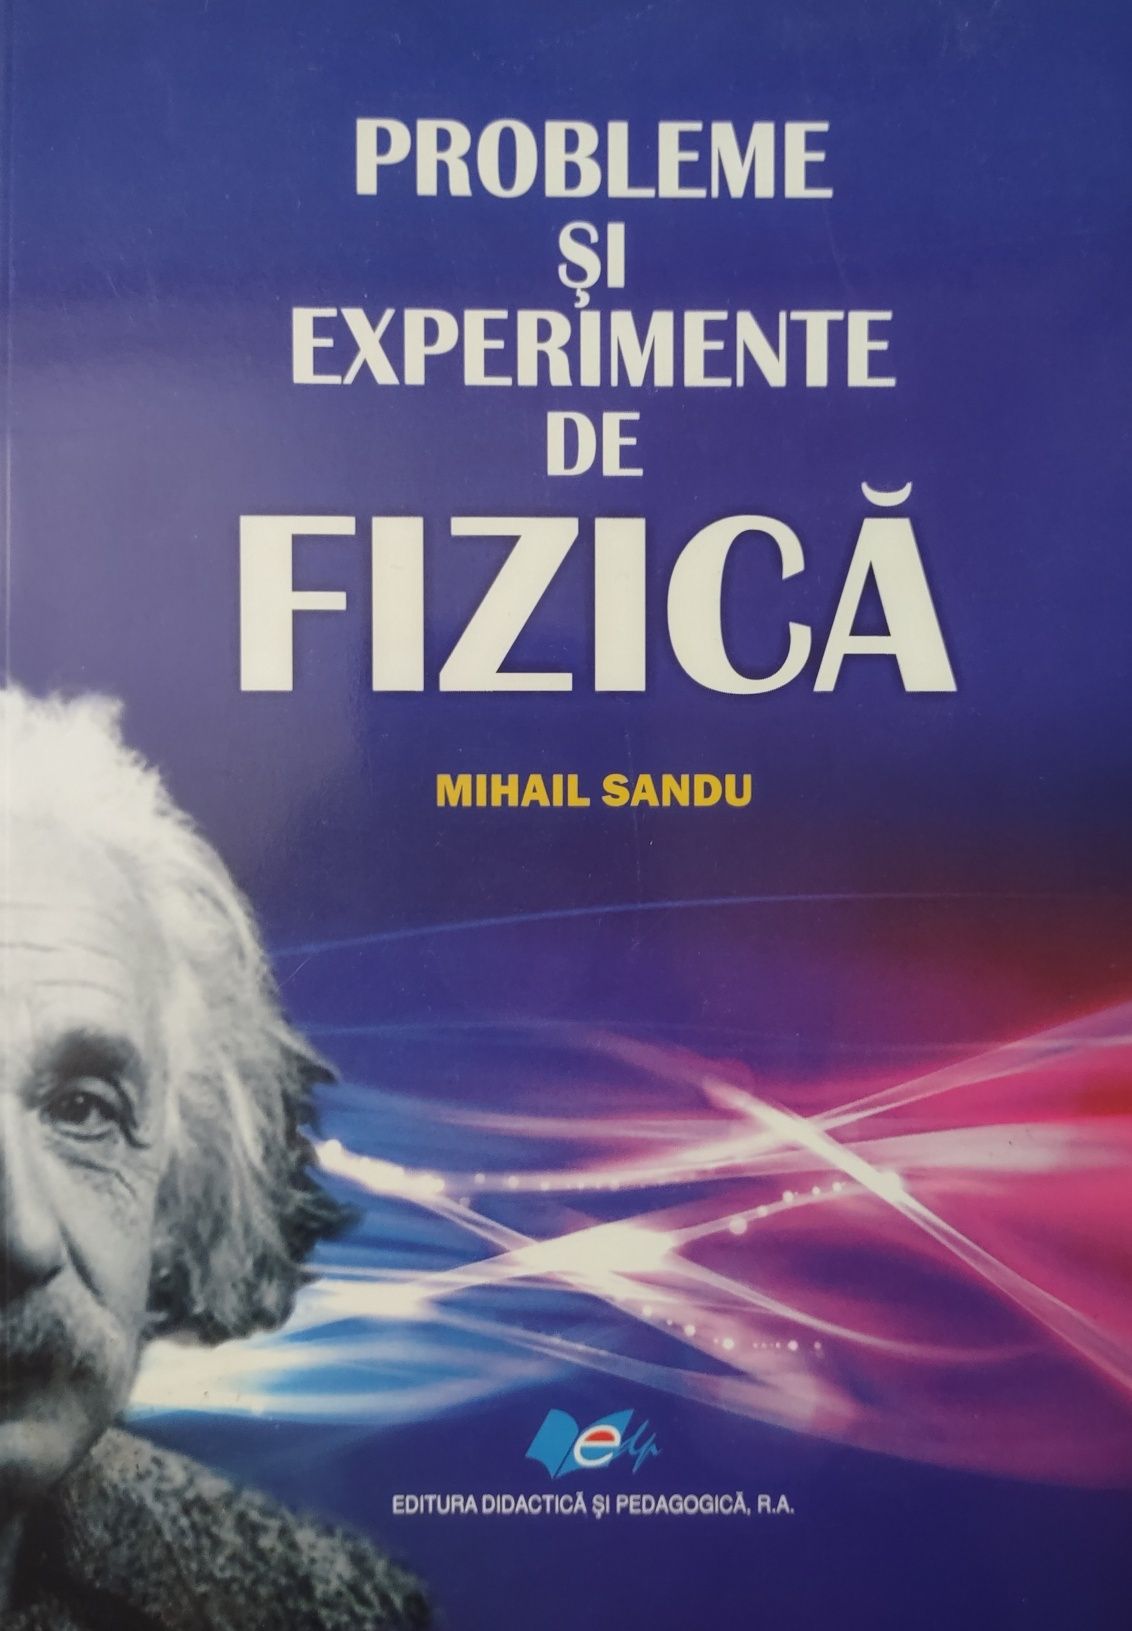 Probleme și experimente de fizica-Mihail Sandu-820 pagini